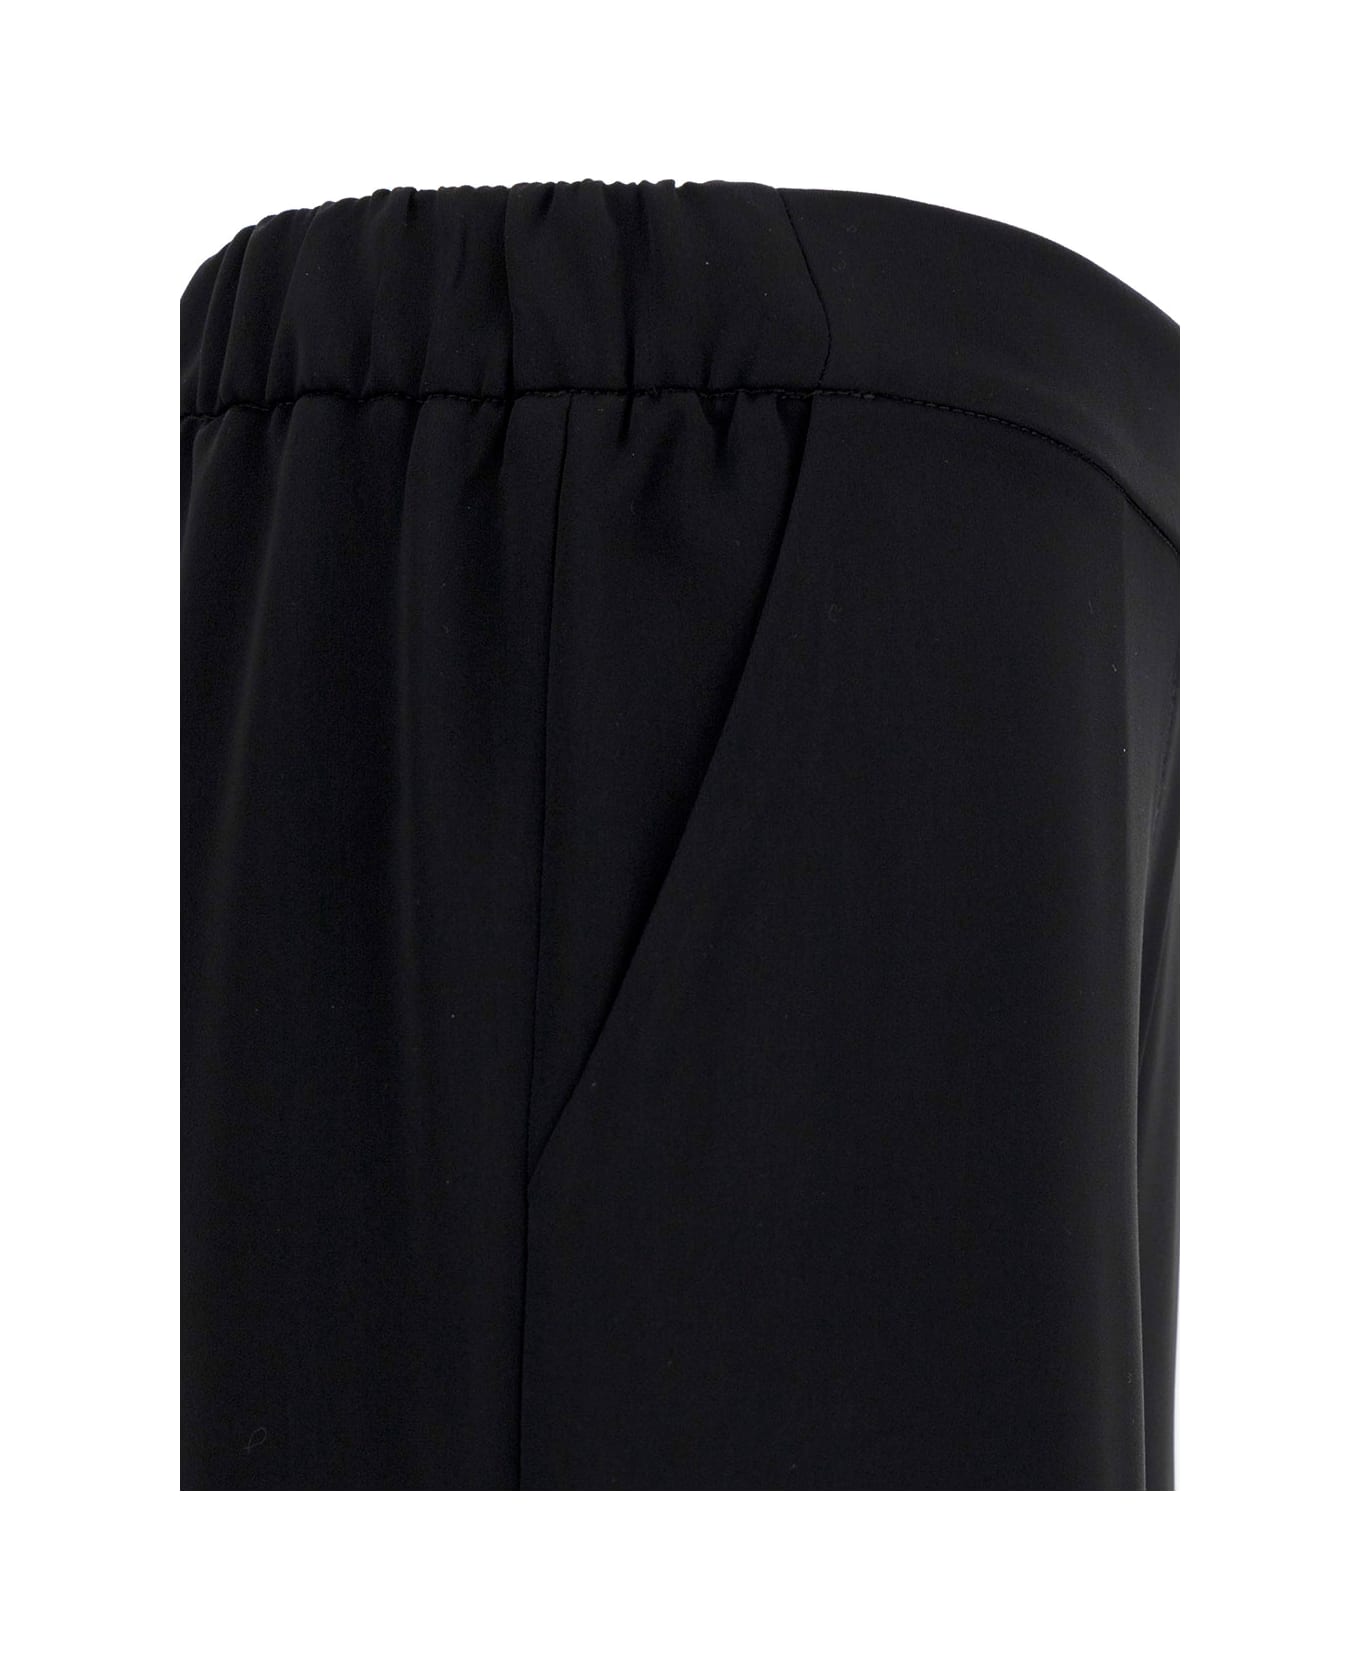 Parosh Black Loose Pants With Waist-band In Polyamide Woman - NERO